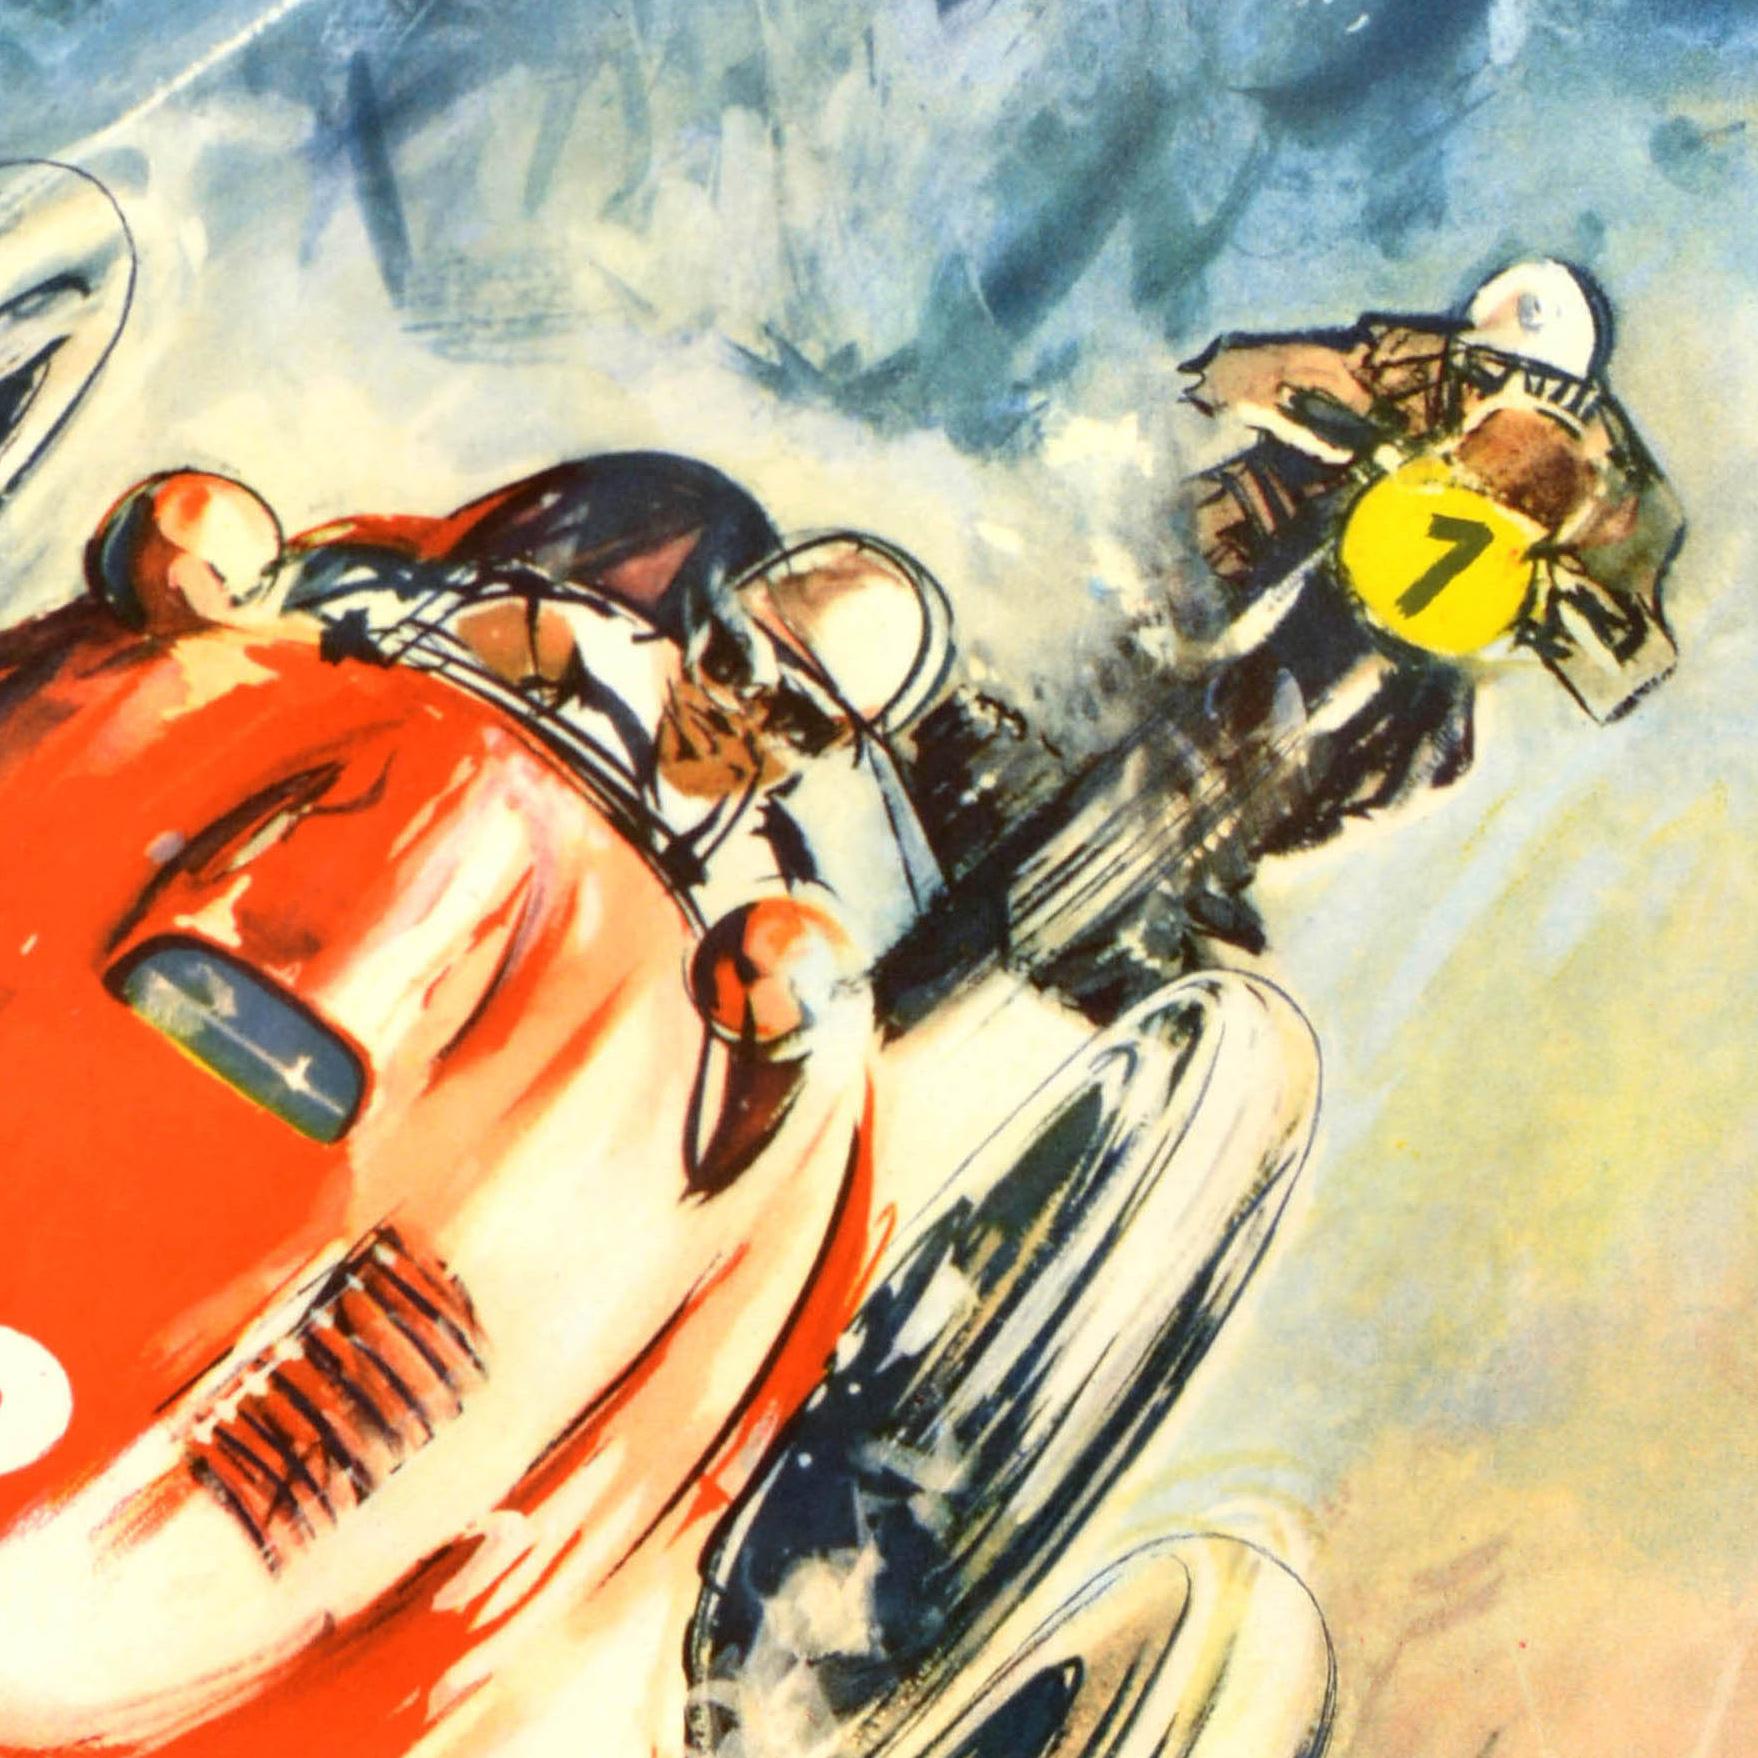 Original Vintage Motorsport Poster XIX International ADAC Eifel Race Nurburgring - Print by Unknown